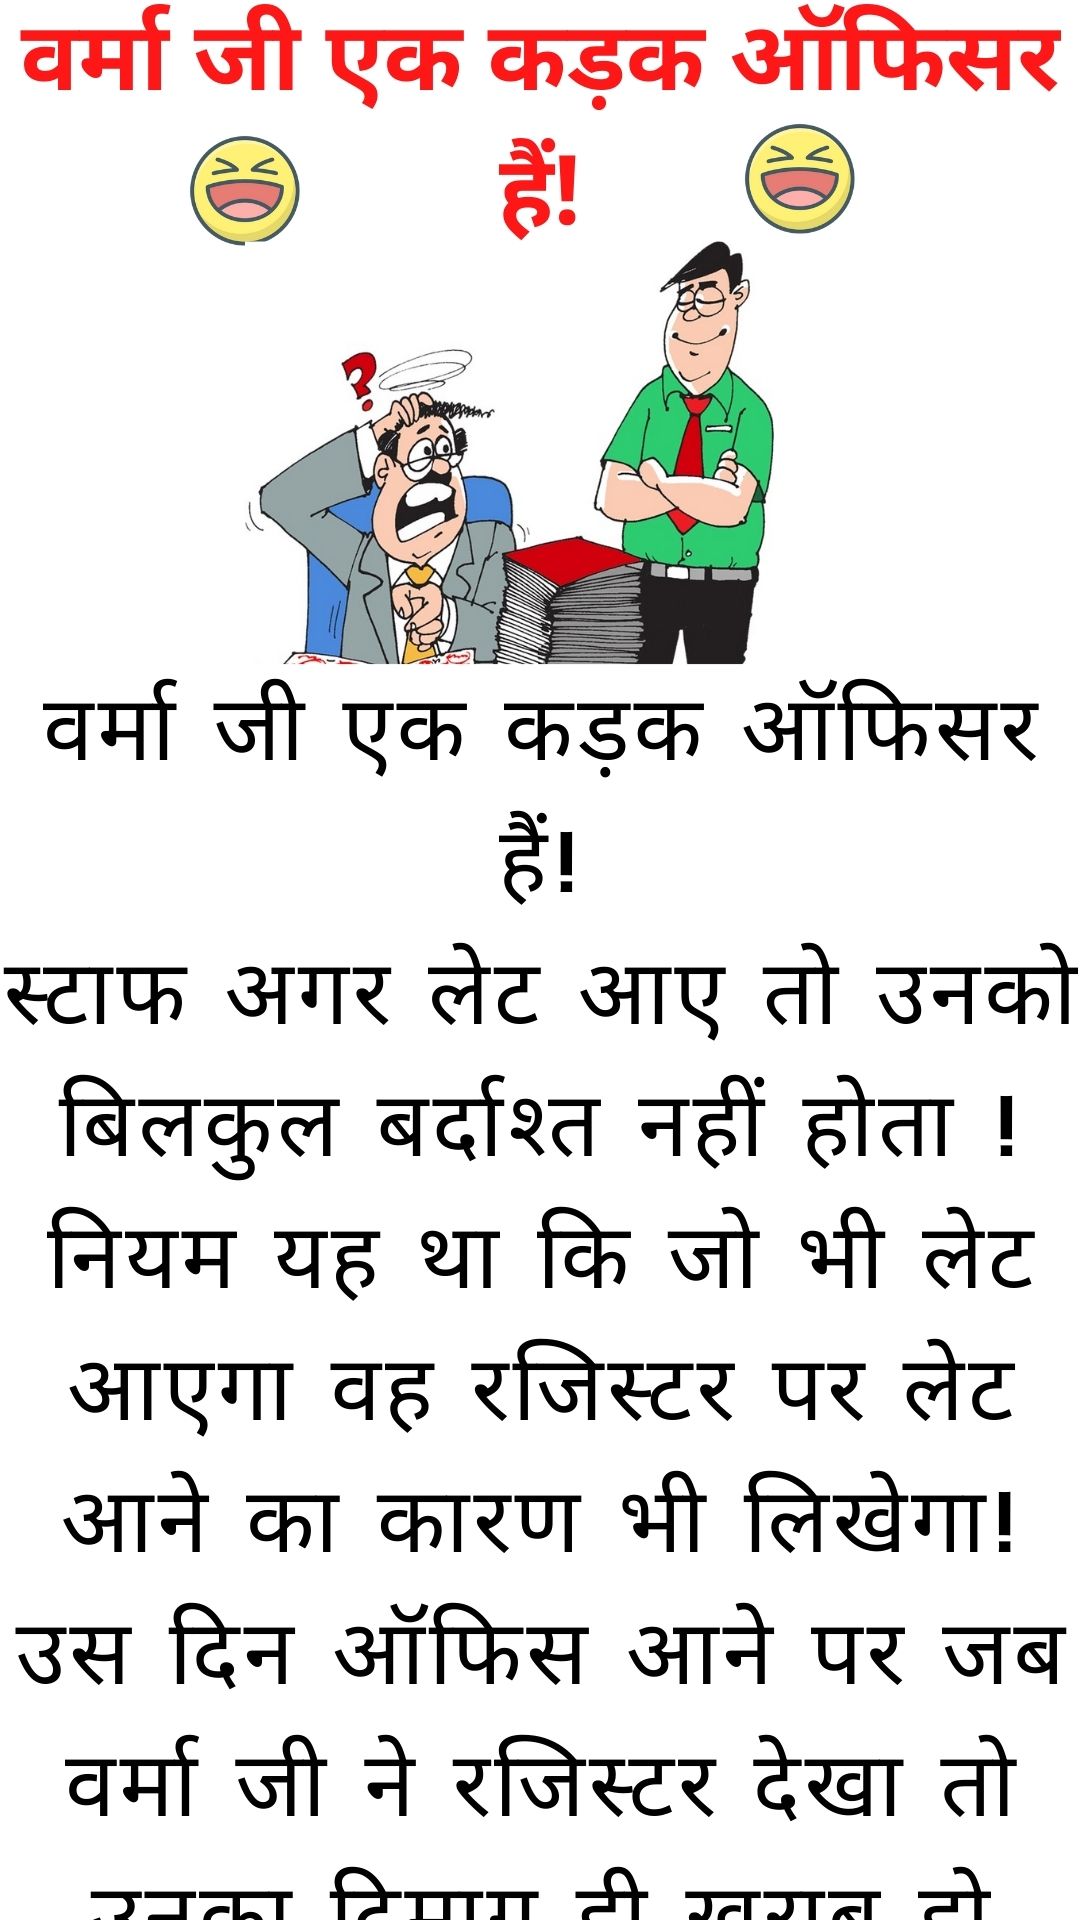 वर्मा जी एक कड़क ऑफिसर हैं! - Funny Jokes in hindi